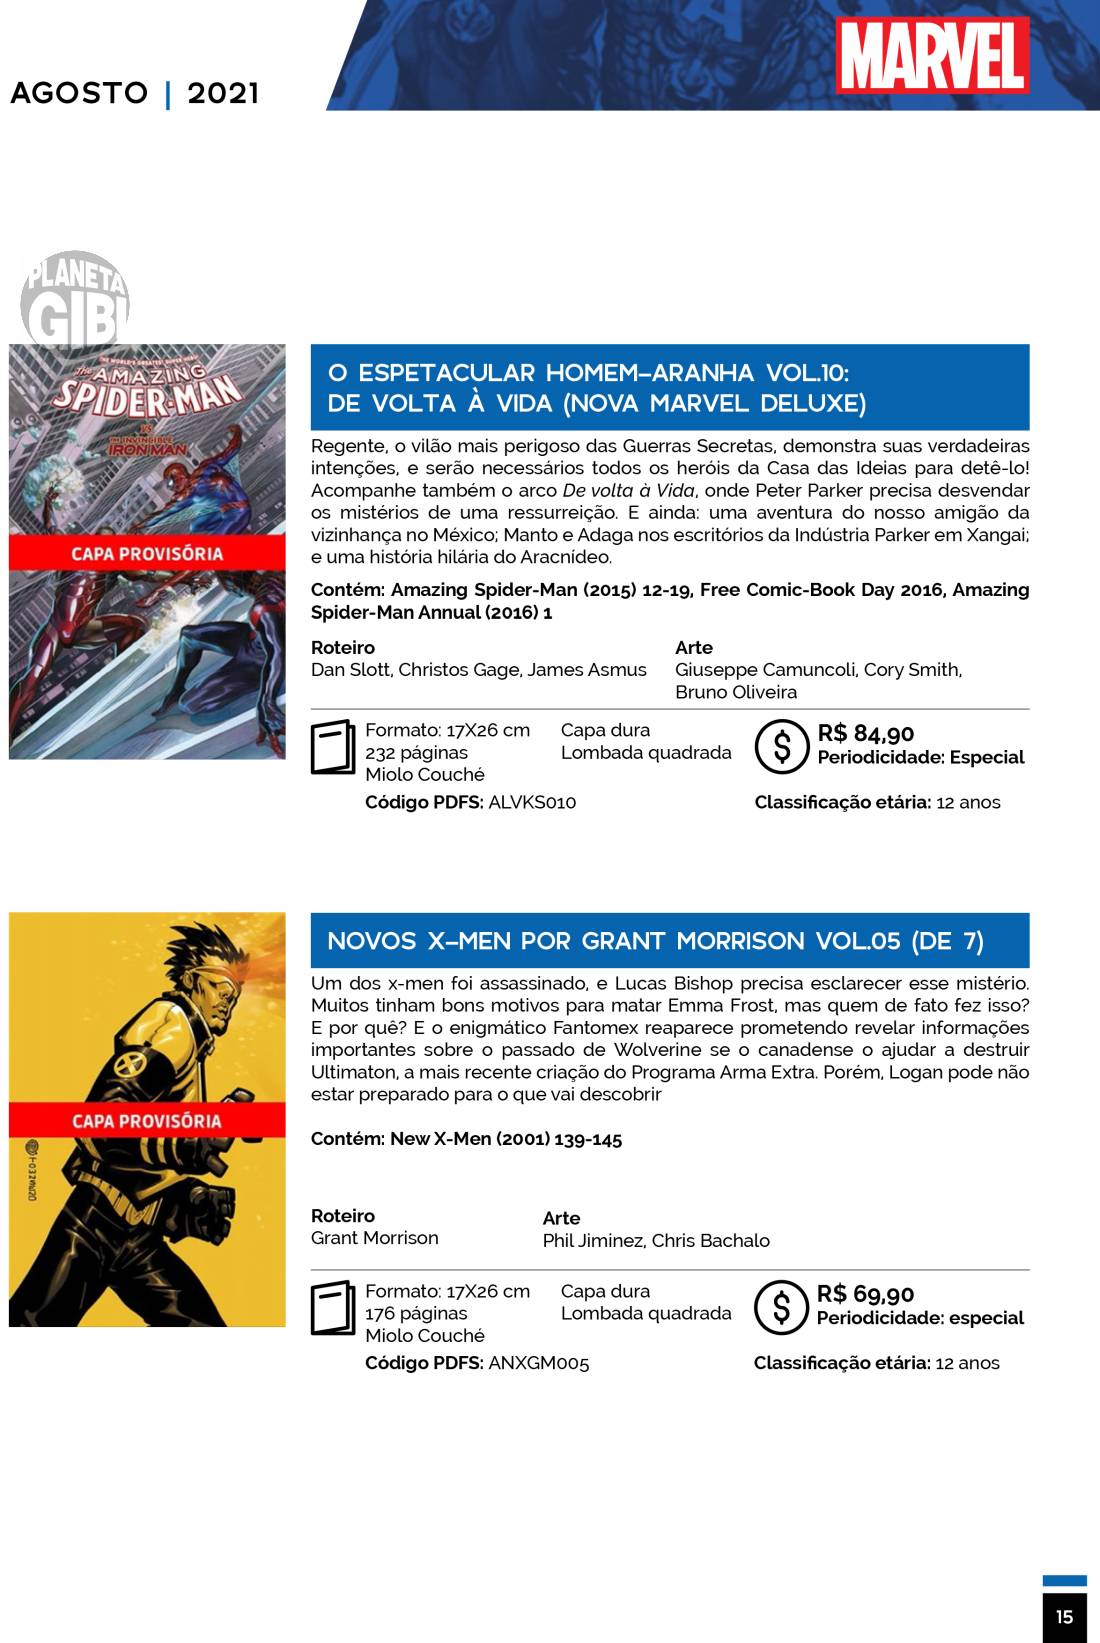 9 - Checklist Marvel/Panini (Julho/2020 - pág.09) - Página 9 Catalogo-Julho-Agosto-15